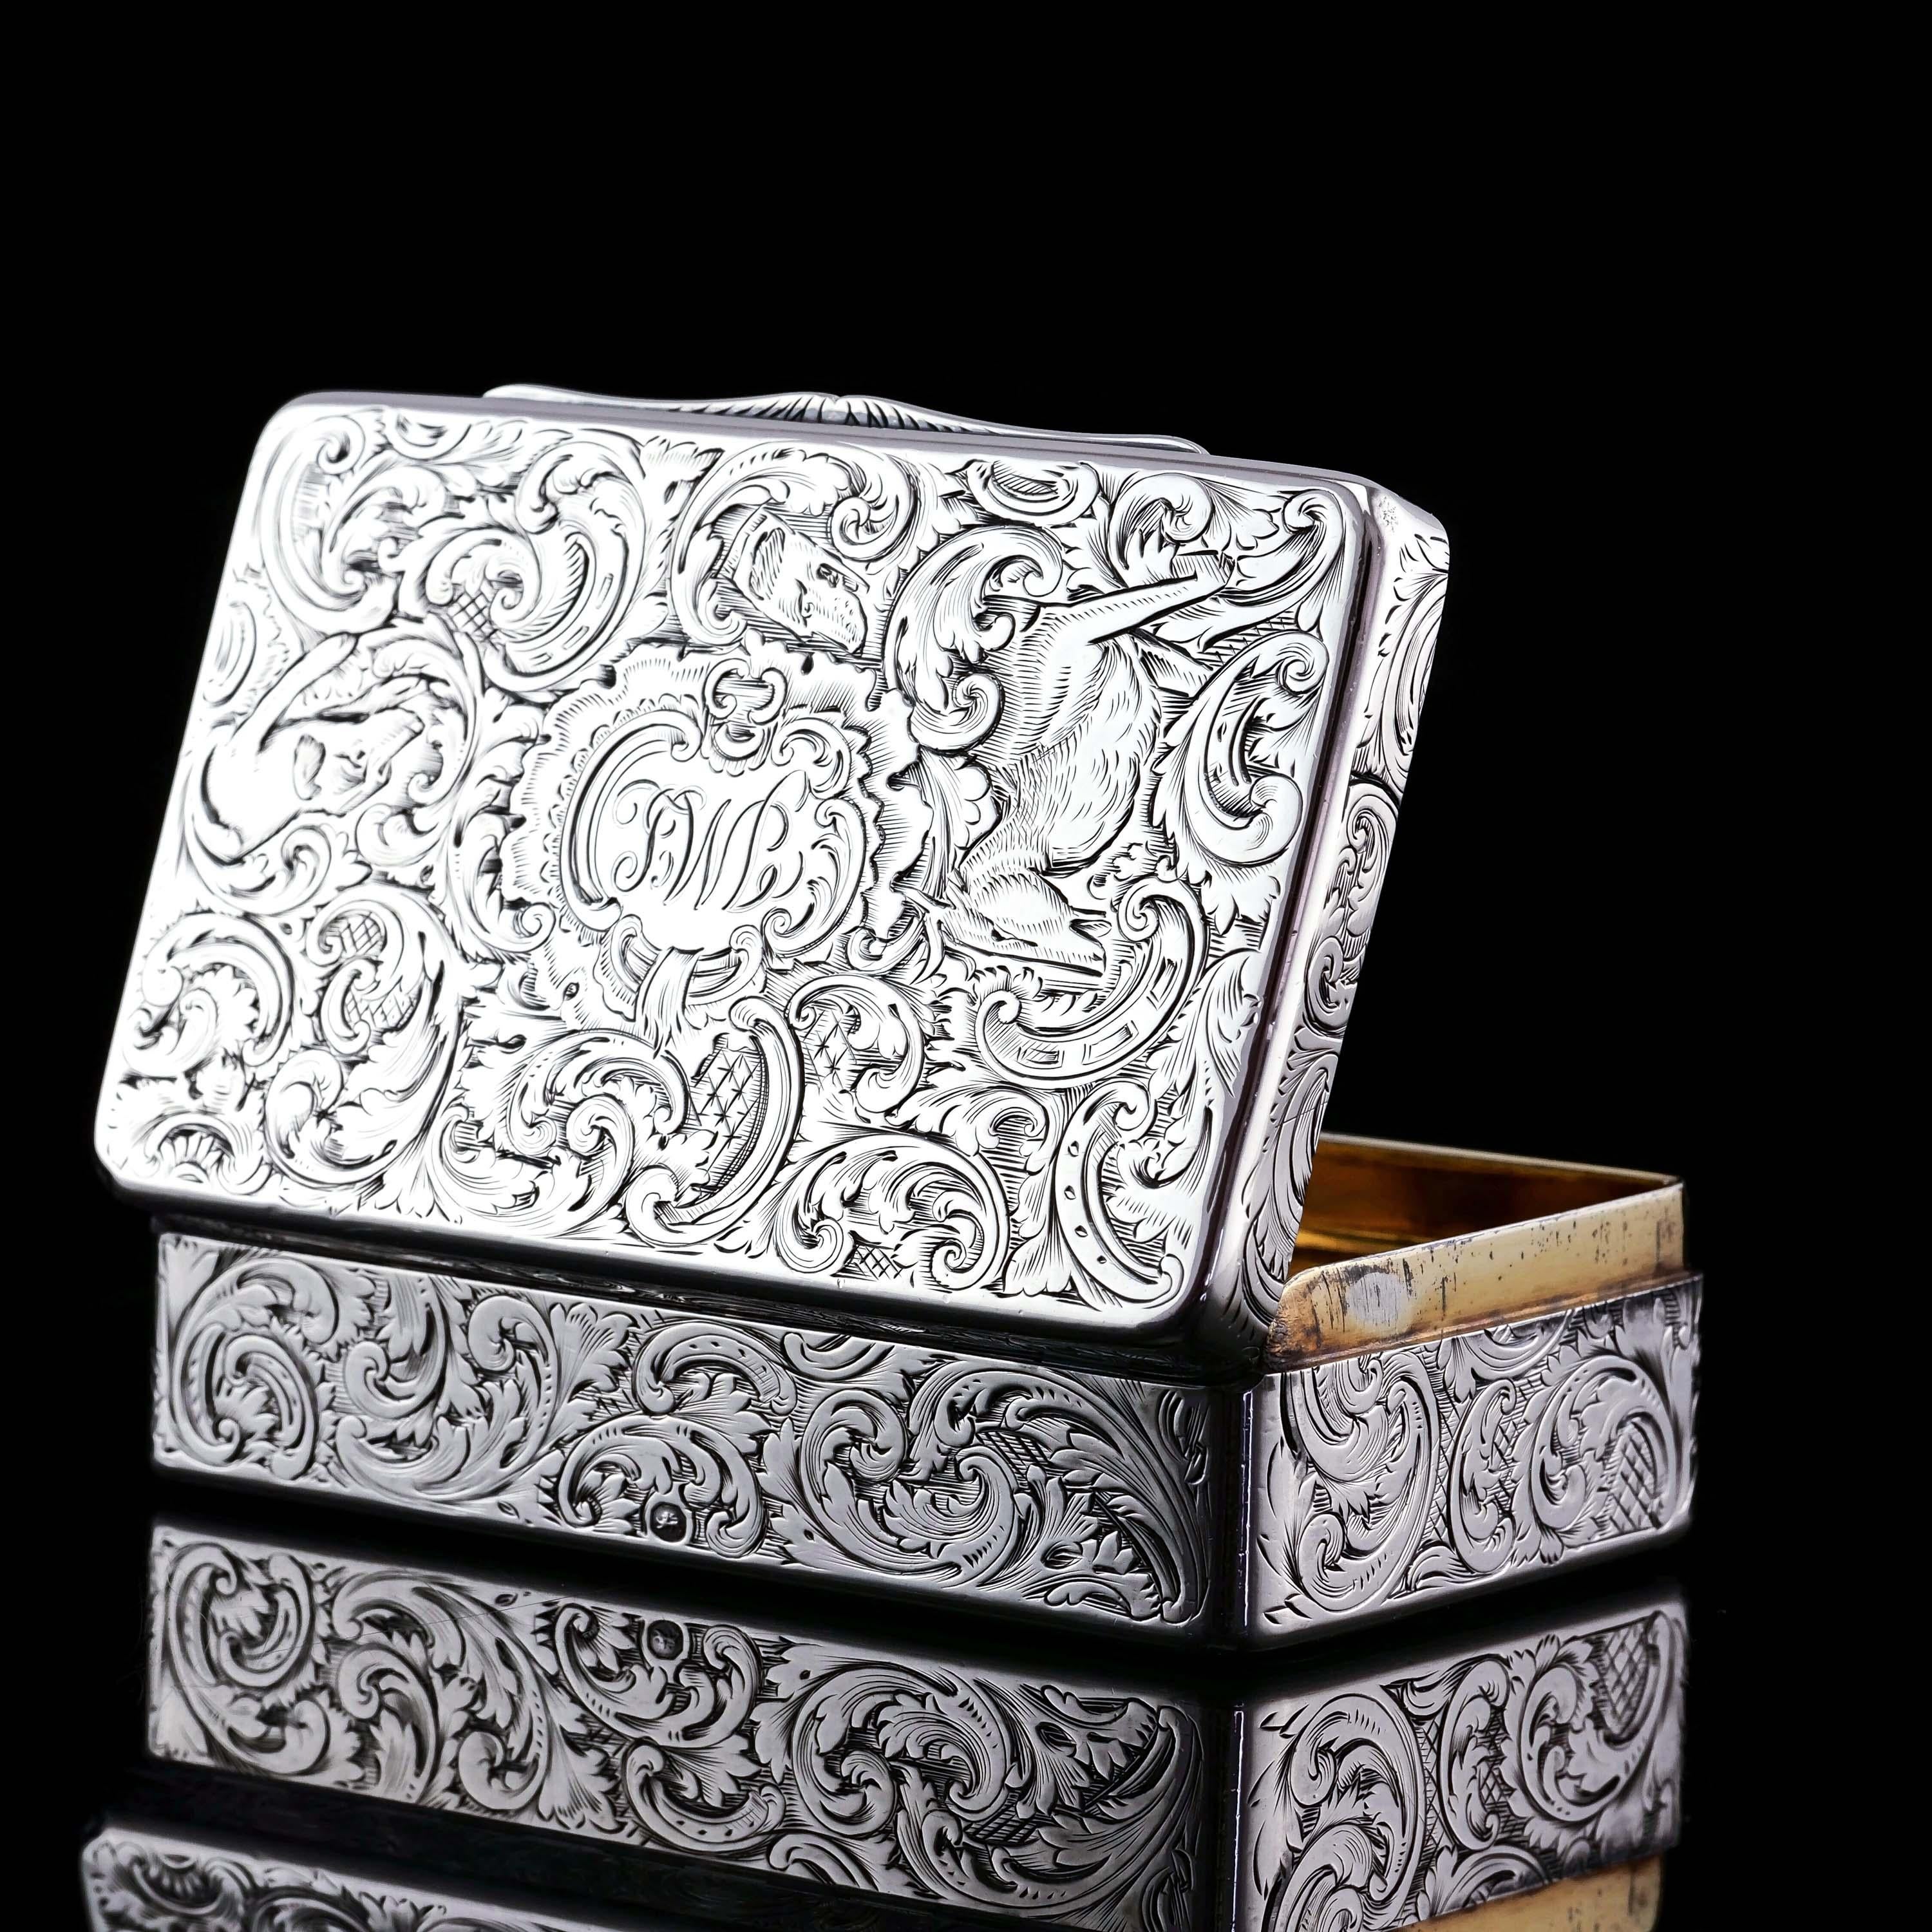 Antique Silver Snuff Box Hunting Scene Design - 1837 For Sale 7